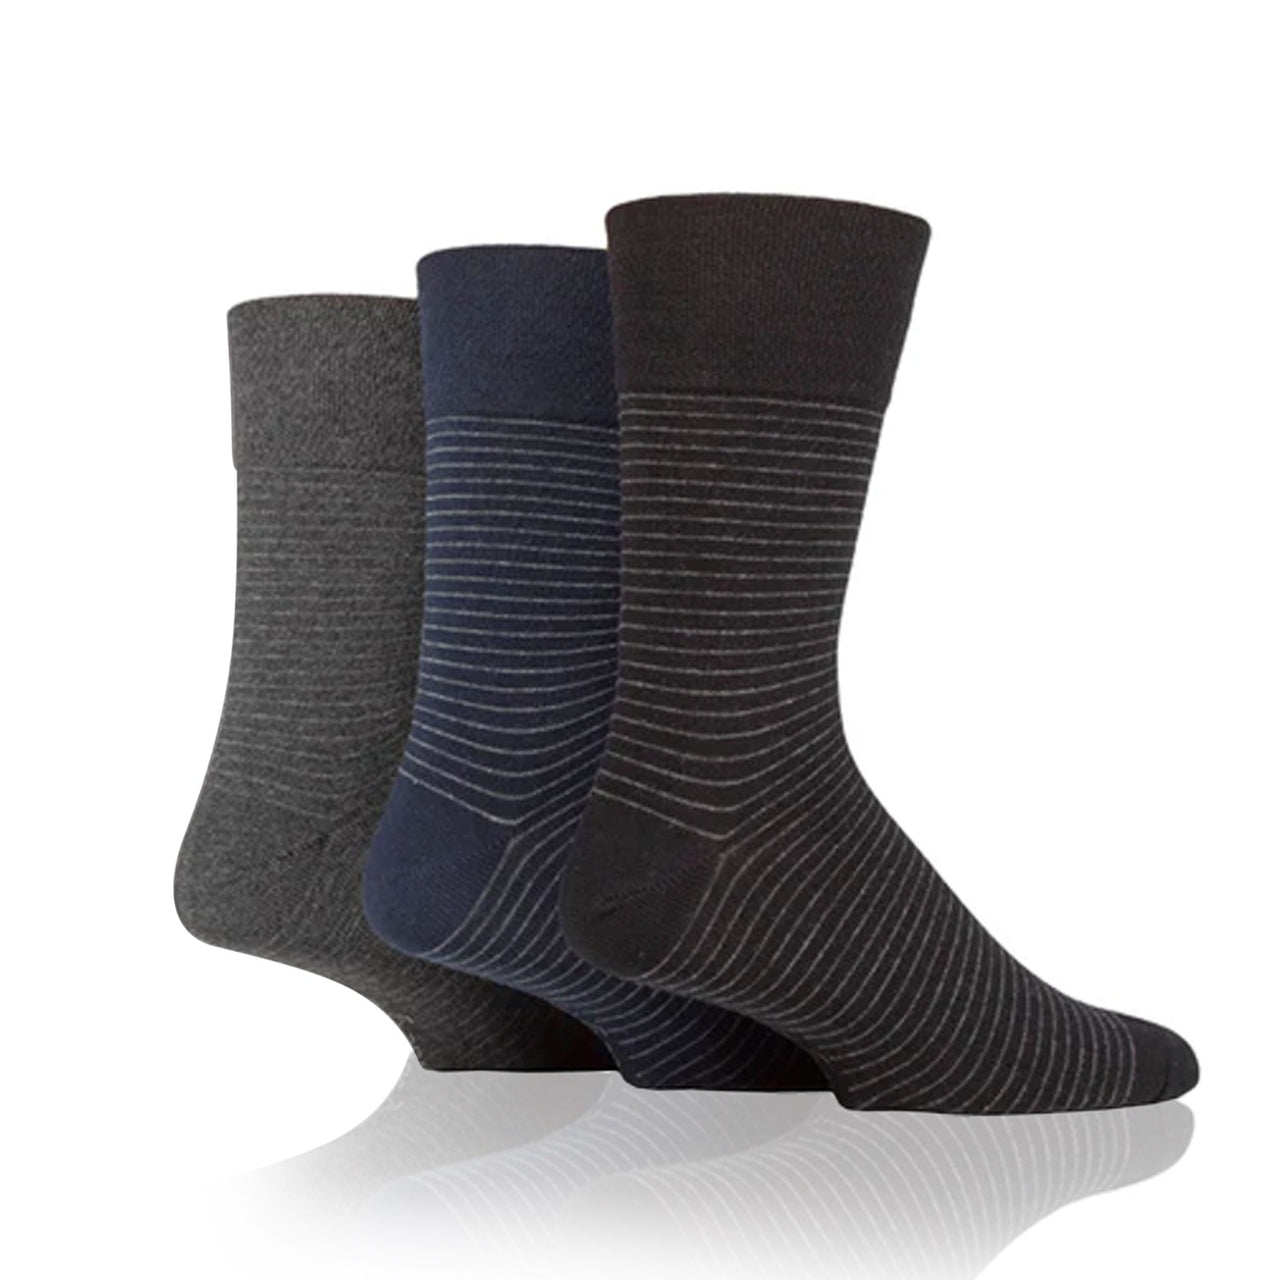 Men's non binding socks in fine stripe